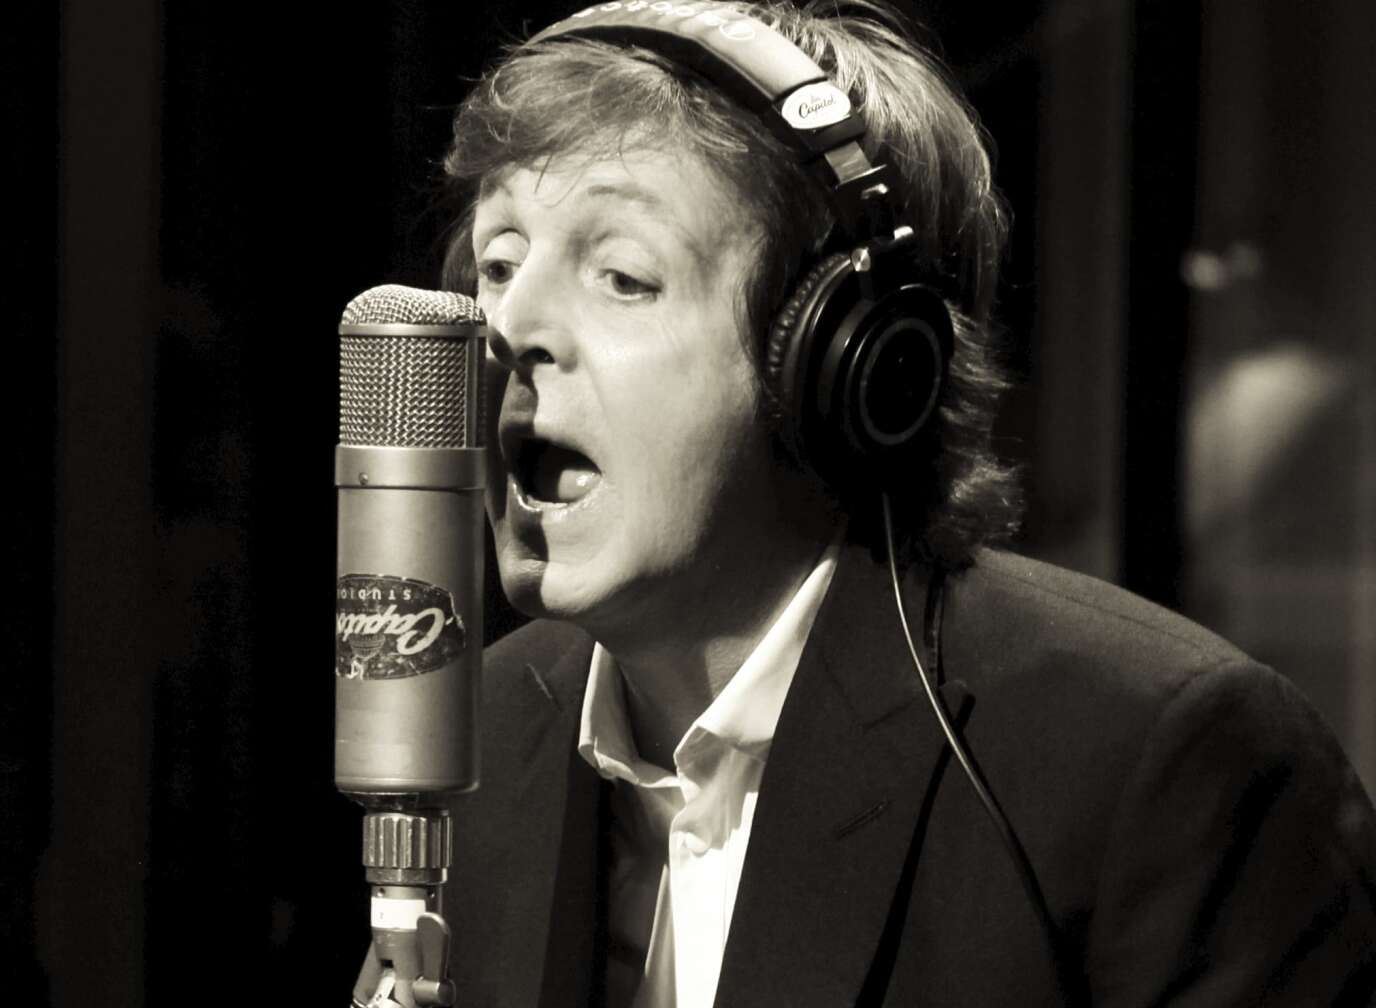 Ex-Beatle Paul McCartney